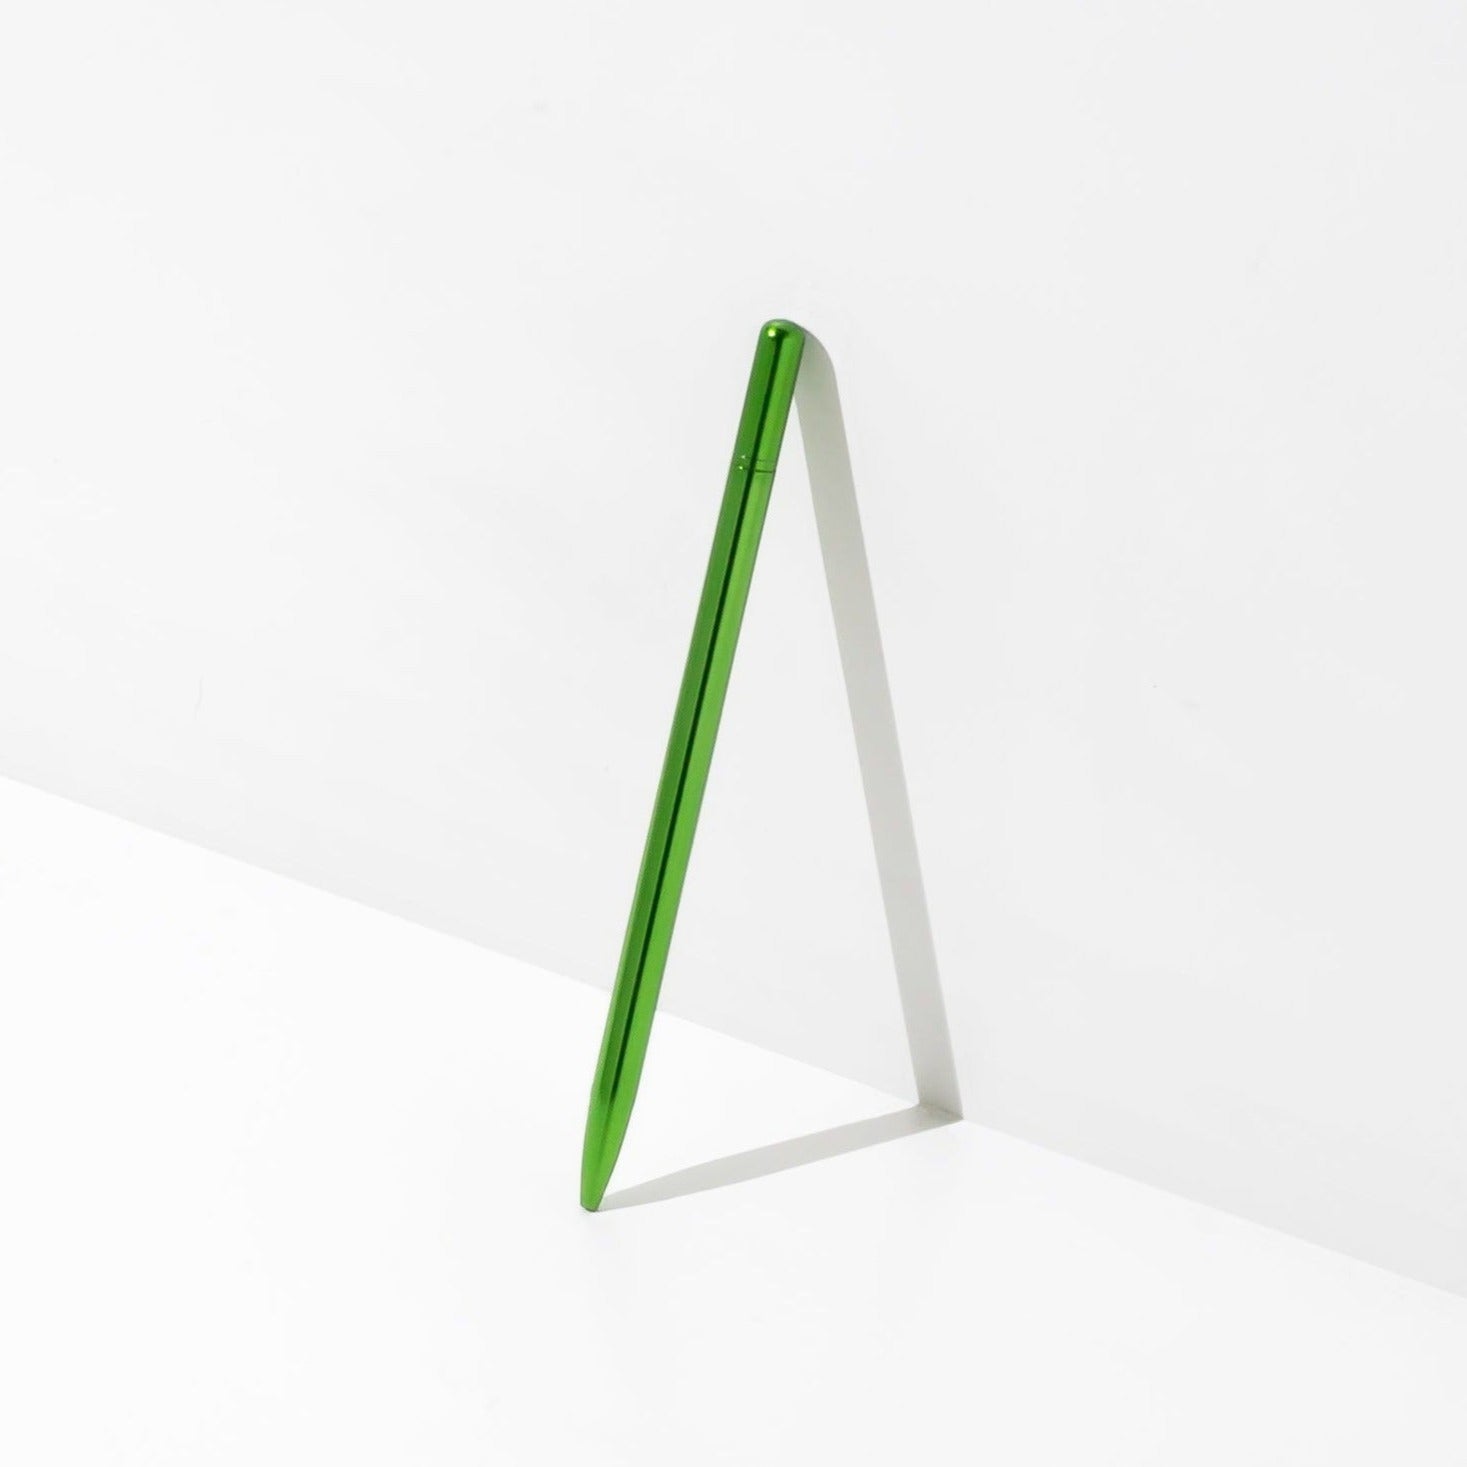 OCTÀON DESIGN | "drop pen" metallic green color.